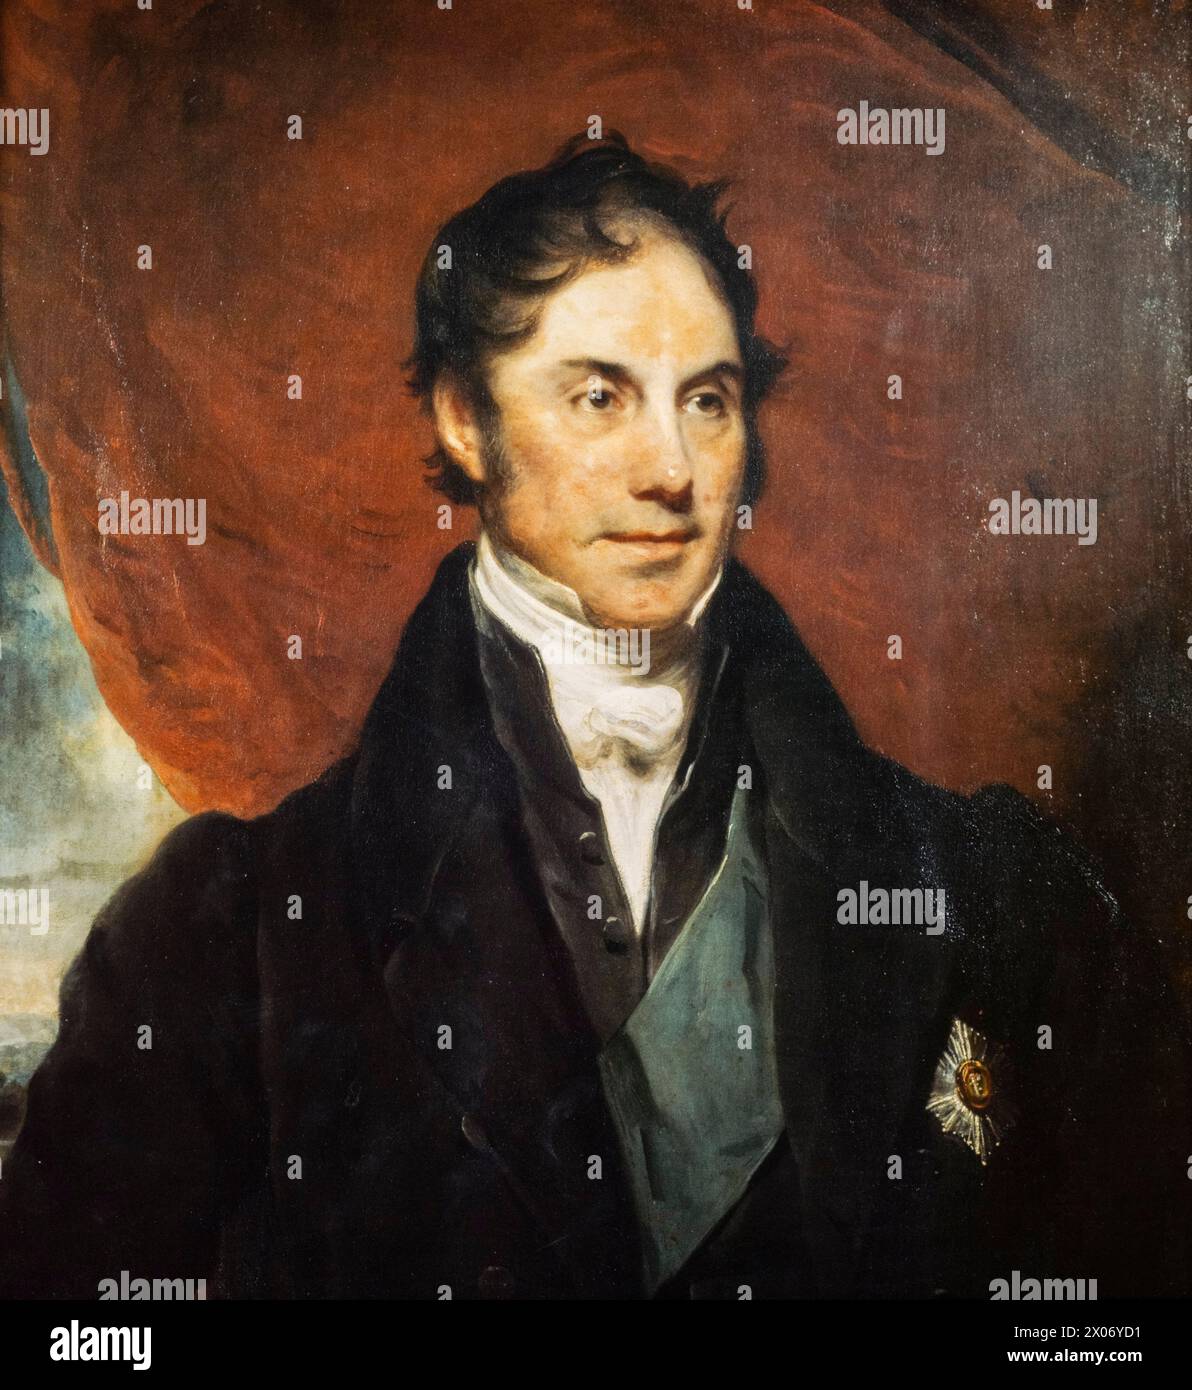 George Hamilton-Gordon, 4e comte d'Aberdeen (1784-1860), titré 'Lord Haddo', premier ministre du Royaume-Uni de 1852 à 1855, portrait peint à l'huile sur toile par Sir Martin Archer Shee, vers 1838 Banque D'Images